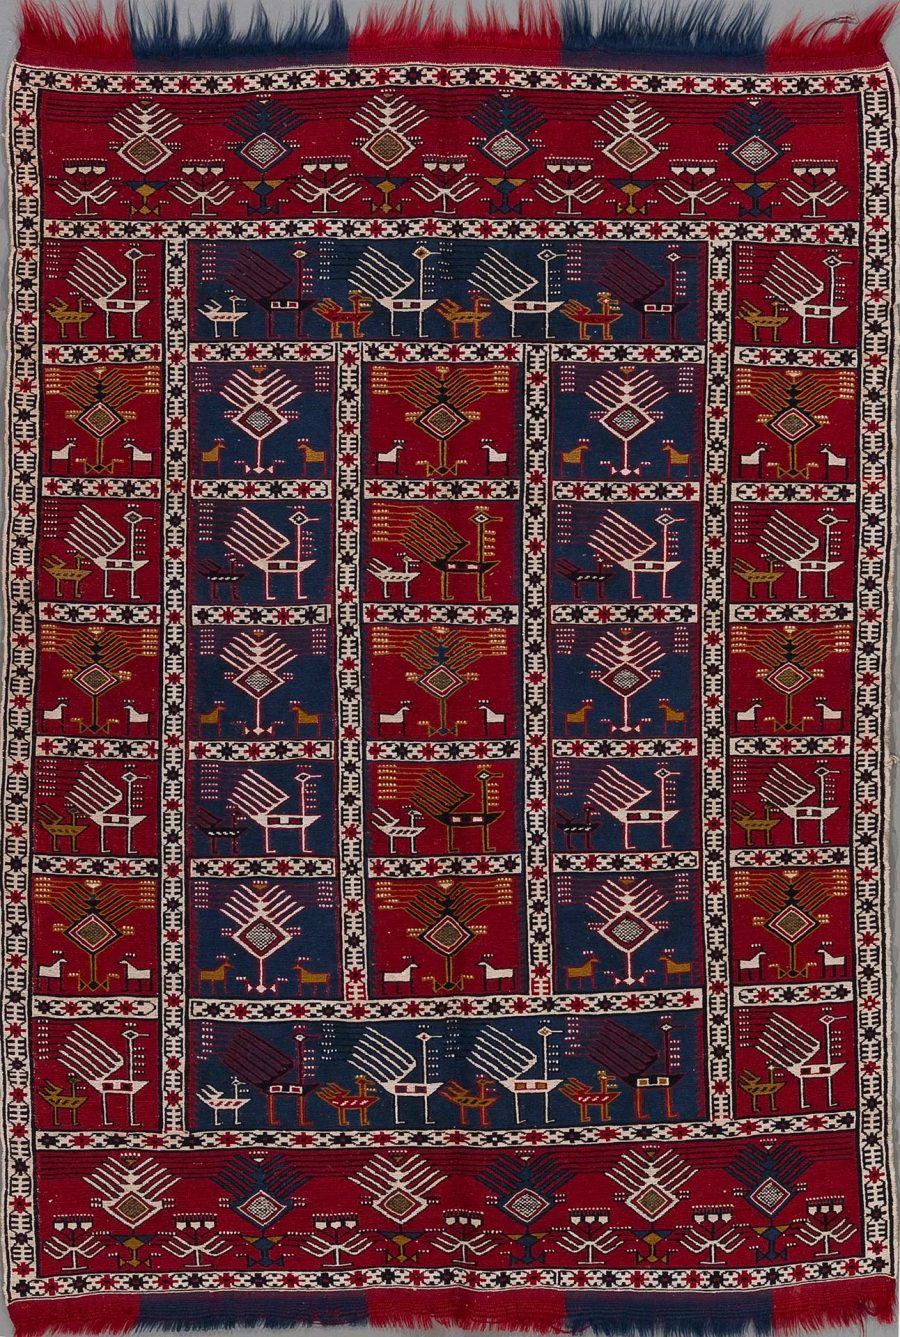 Traditioneller handgewebter Teppich mit komplexem Muster in Rot-, Blau- und Beigetönen, verziert mit geometrischen und stilisierten floralen Motiven sowie Tierdarstellungen, flankiert von dekorativen Bordüren und abgeschlossen mit Fransen an beiden Enden.